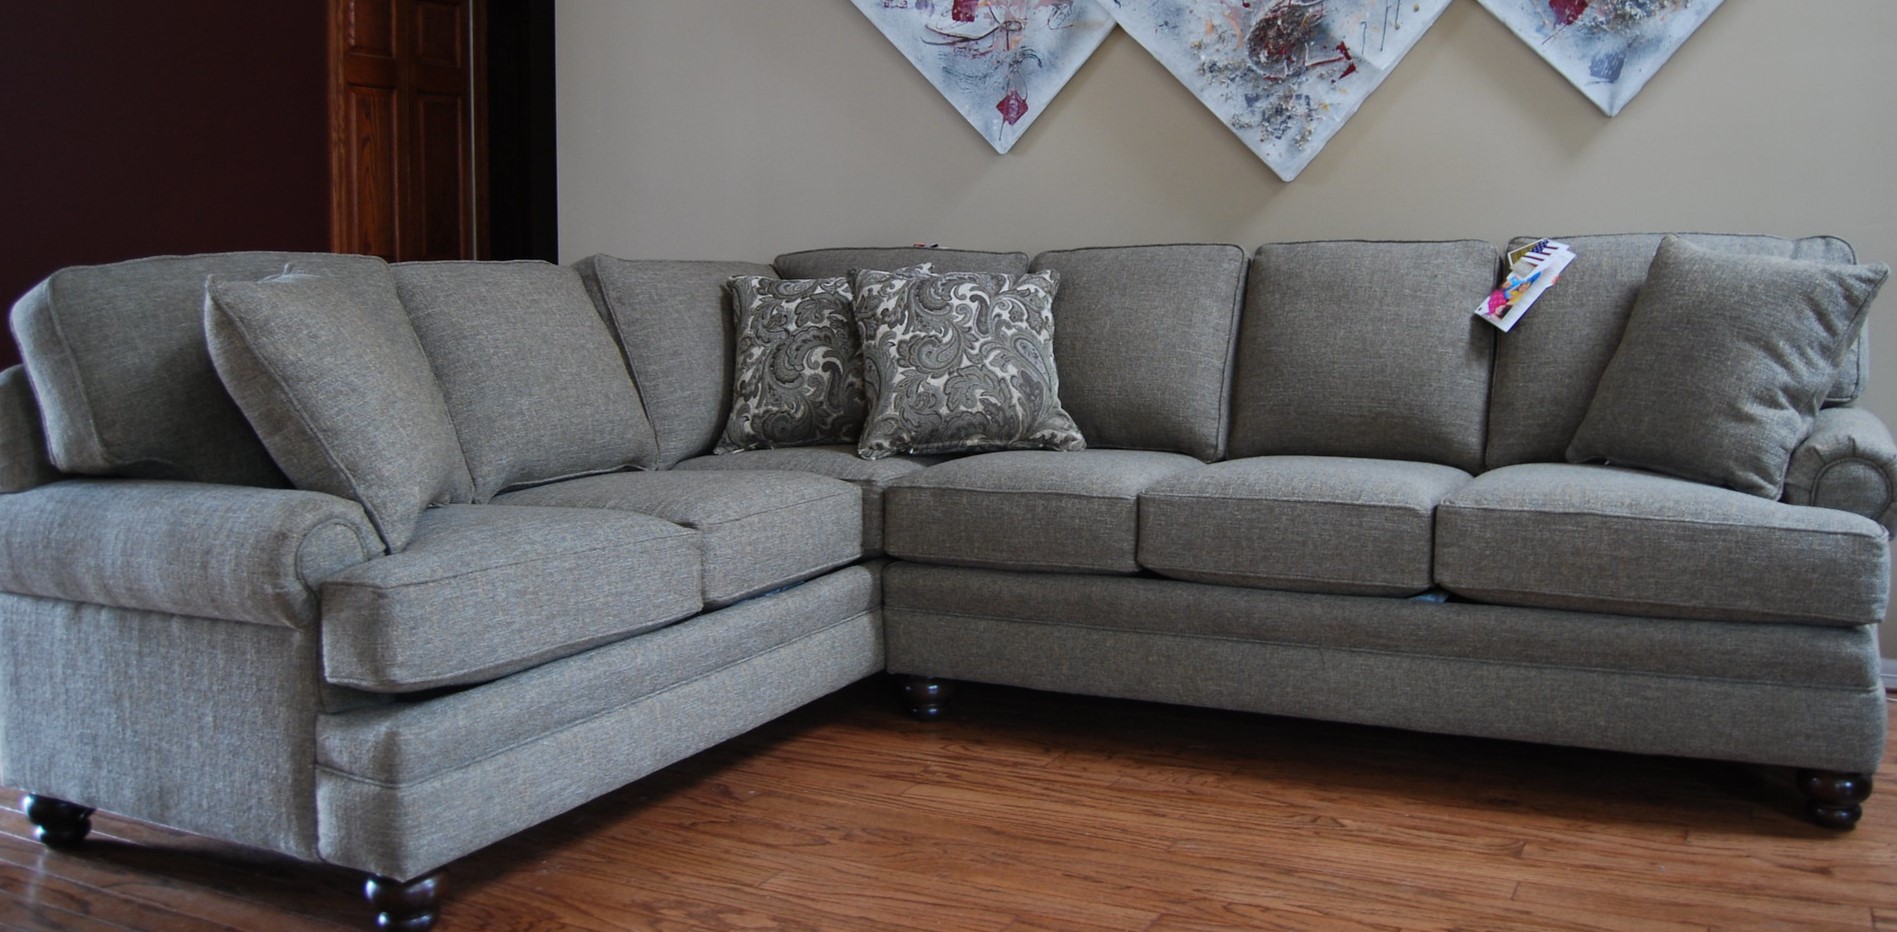 Угловой диван создает много посадочных мест для гостей